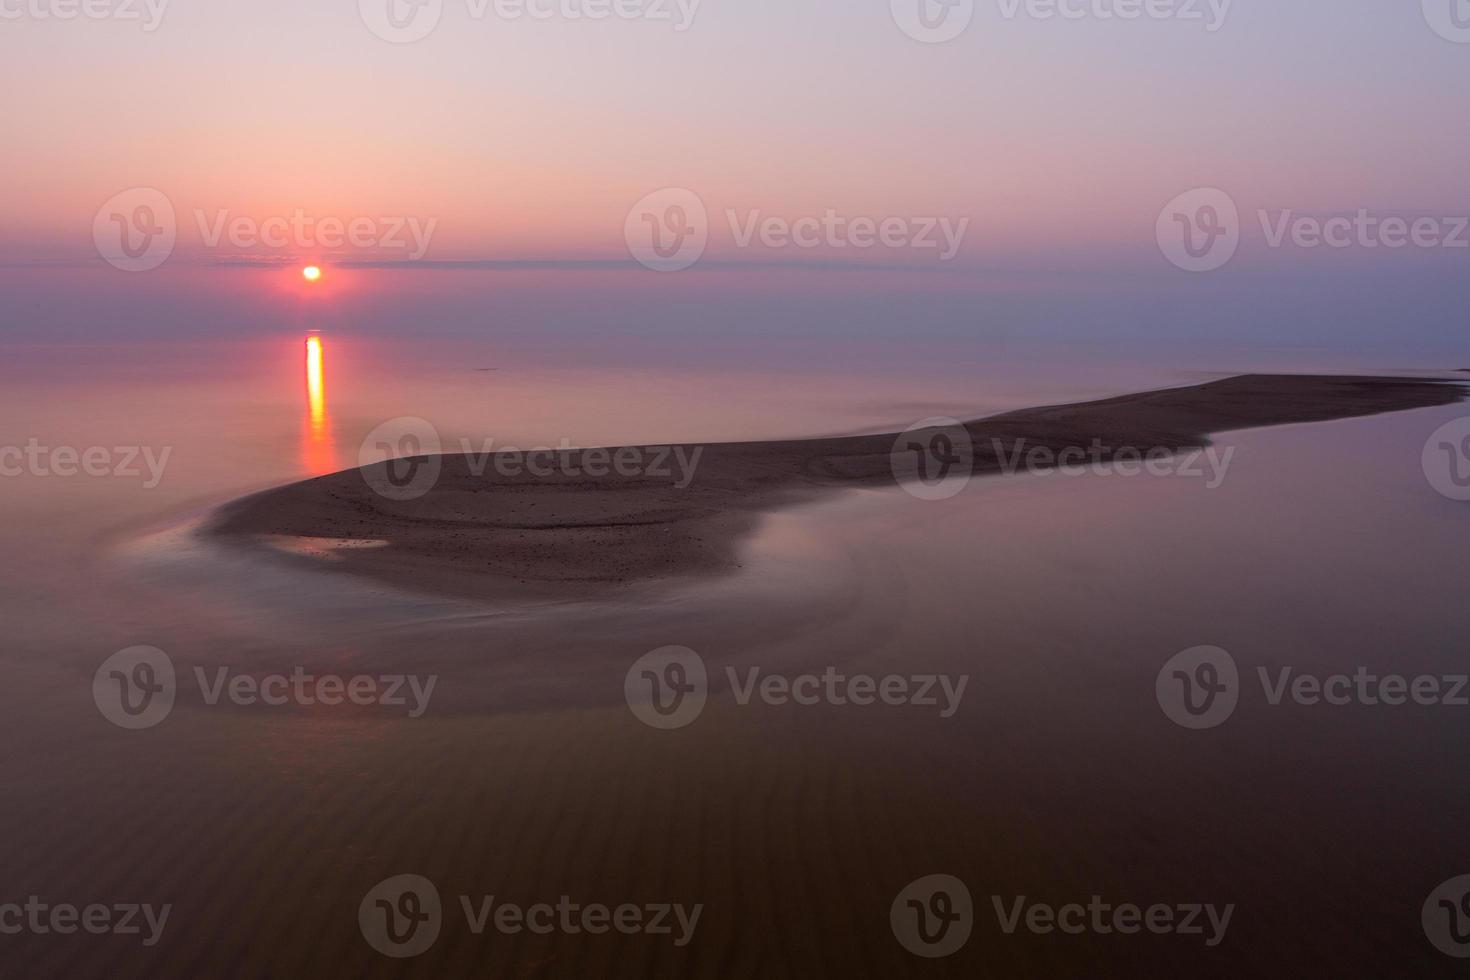 baltic hav kust på solnedgång foto